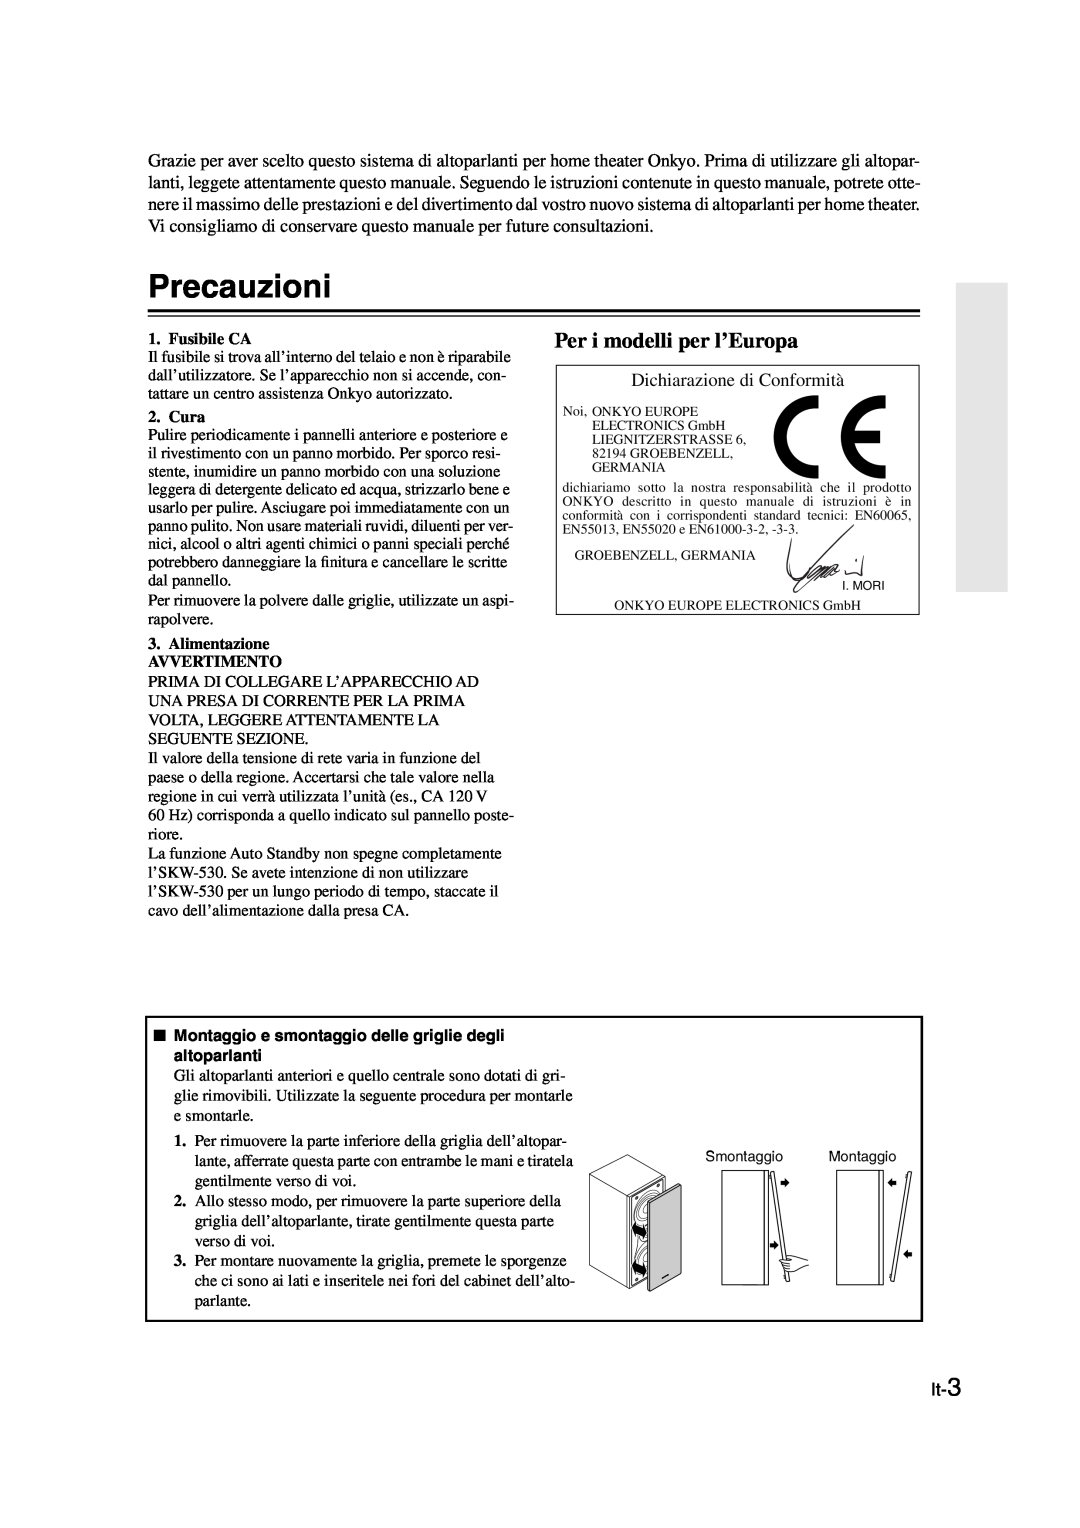 Onkyo SKS-HT530 Precauzioni, Per i modelli per l’Europa, Dichiarazione di Conformità, It-3, Fusibile CA, Cura 